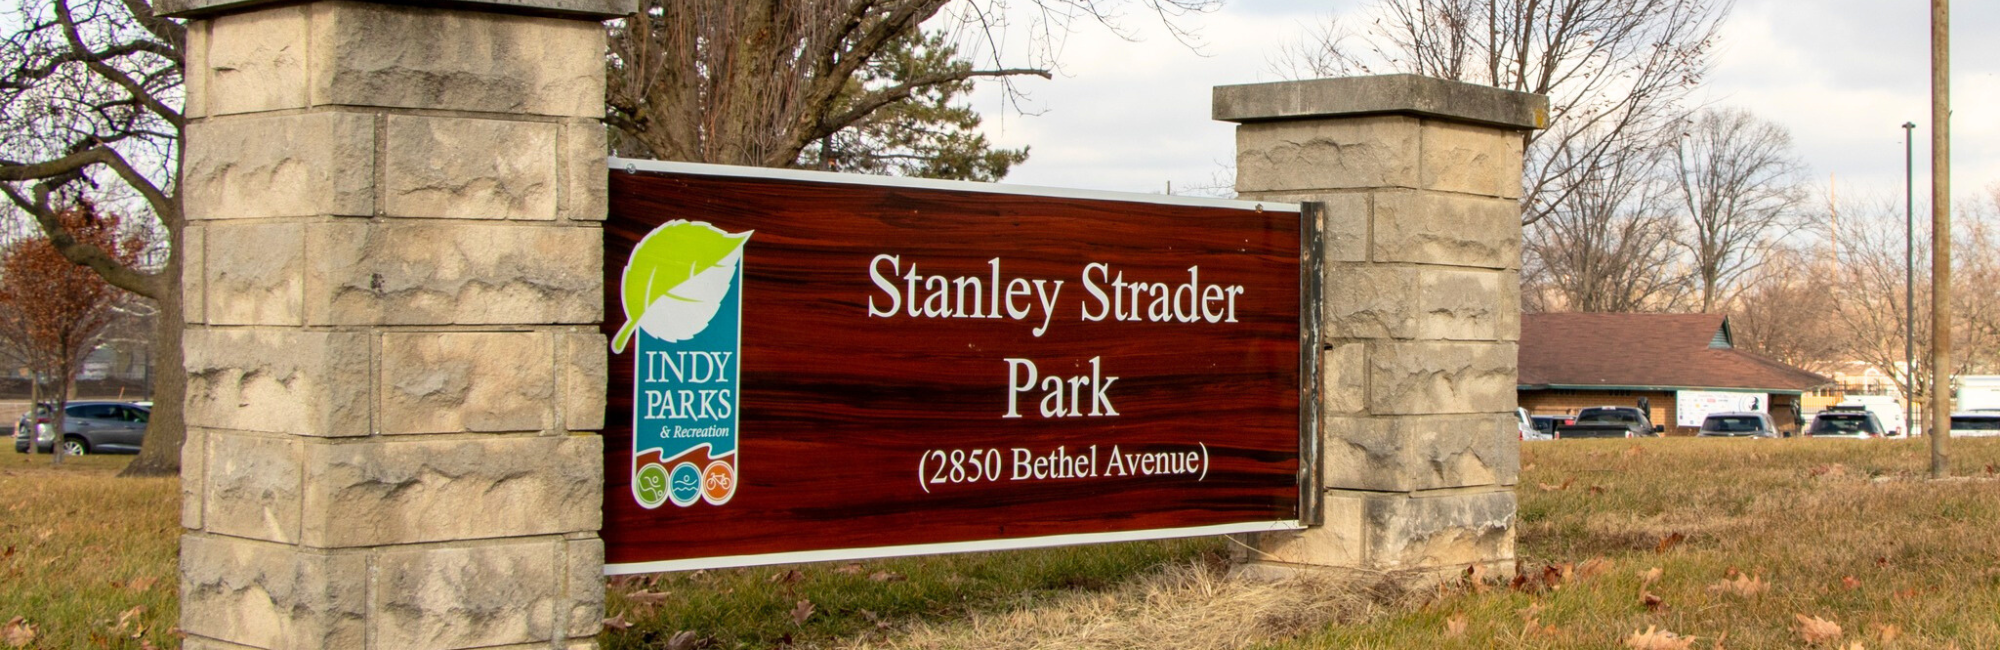 Stanley Strader Park